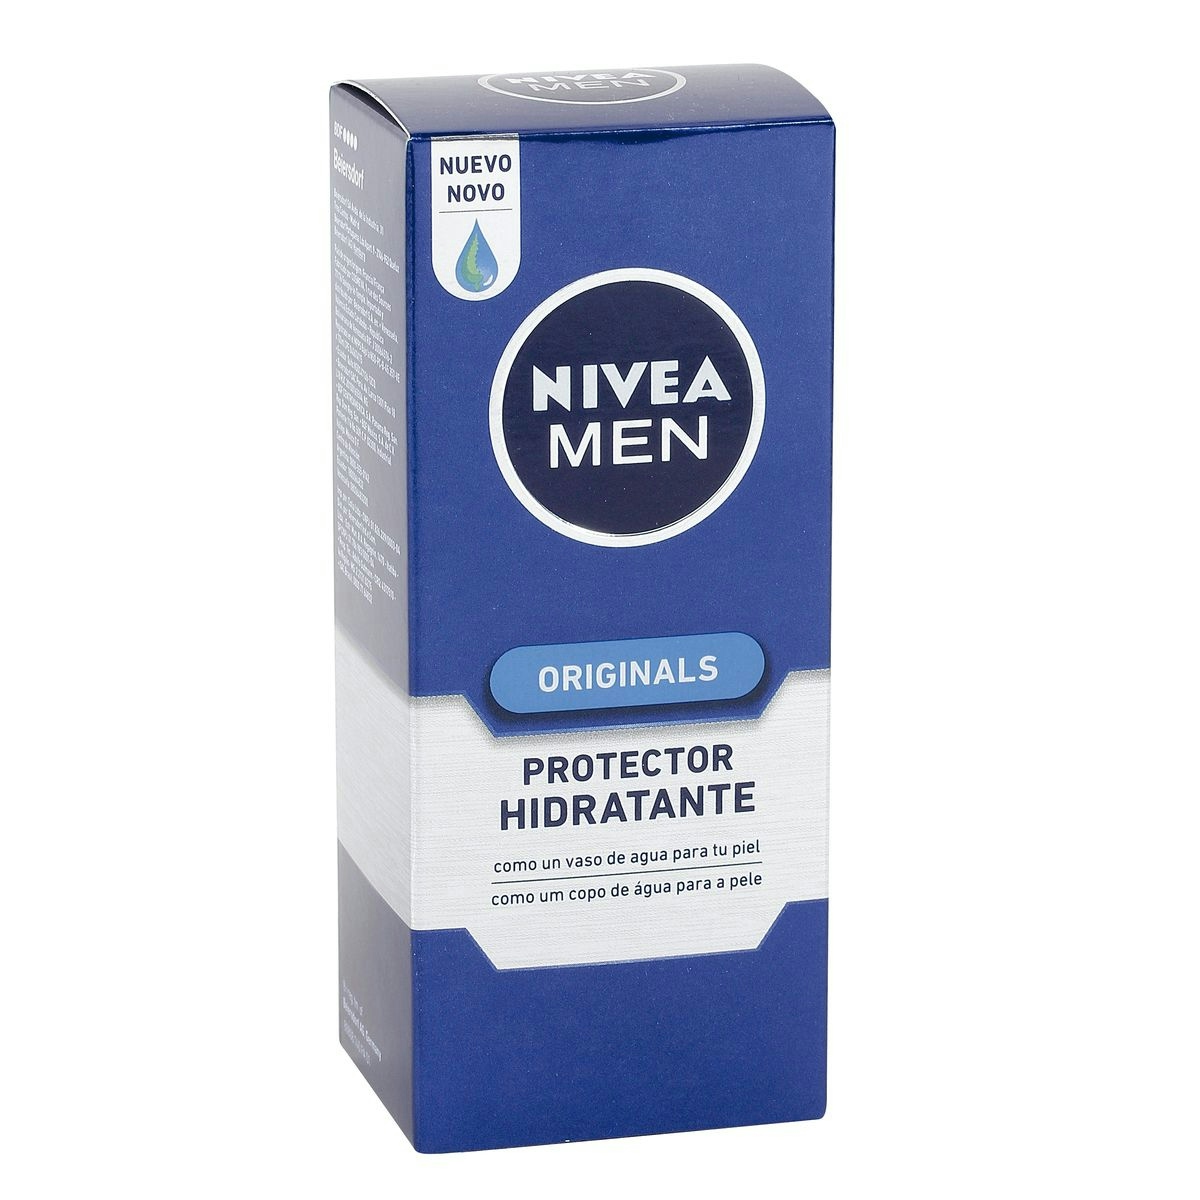 Protector hidratante Men originals NIVEA caja 75 ml